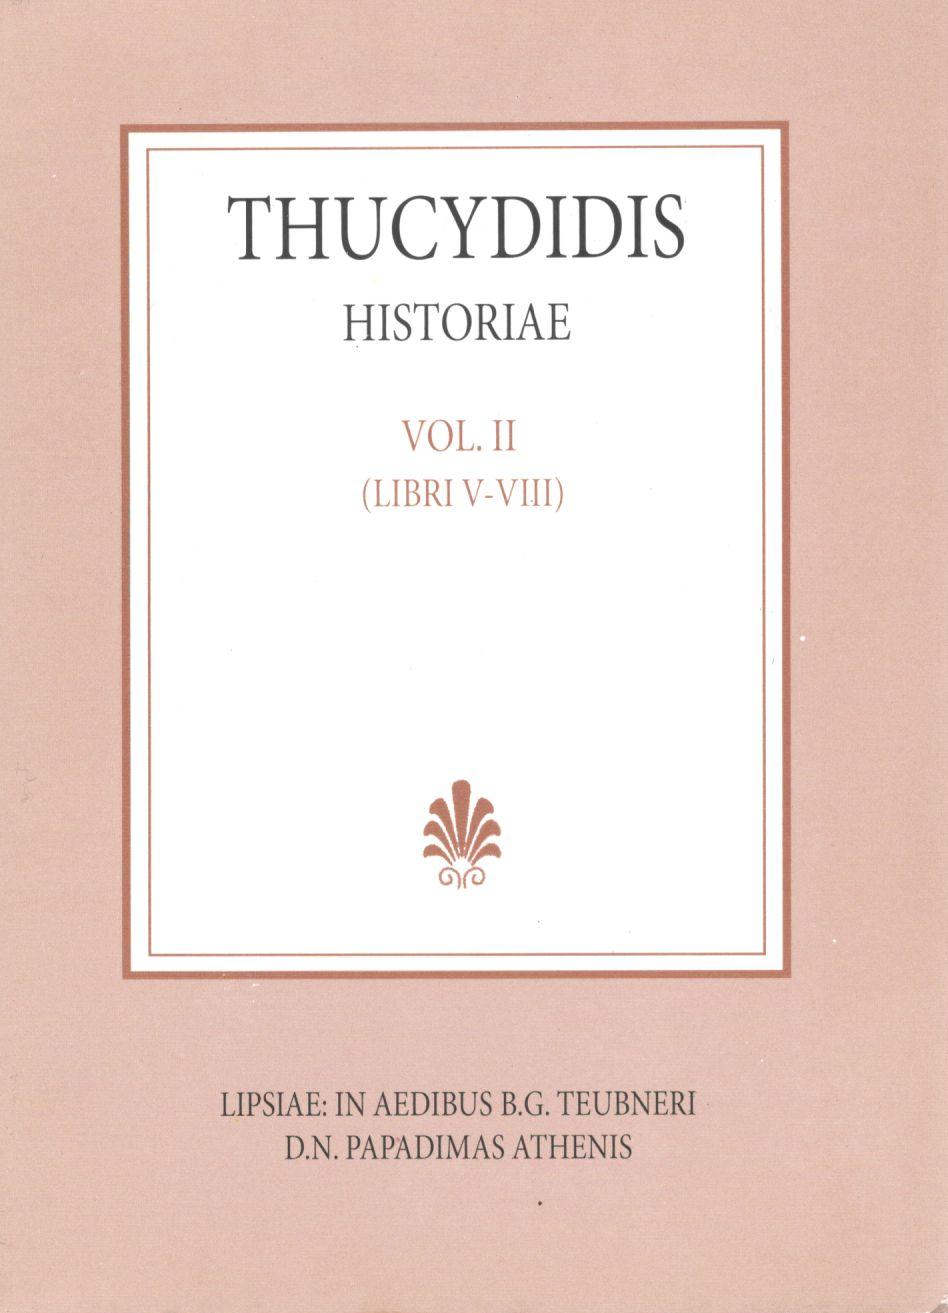 Thucydidis, Historiae, Vol. II, Libri V-VIII [Θουκυδίδου, Ιστορίαι, τ. Β